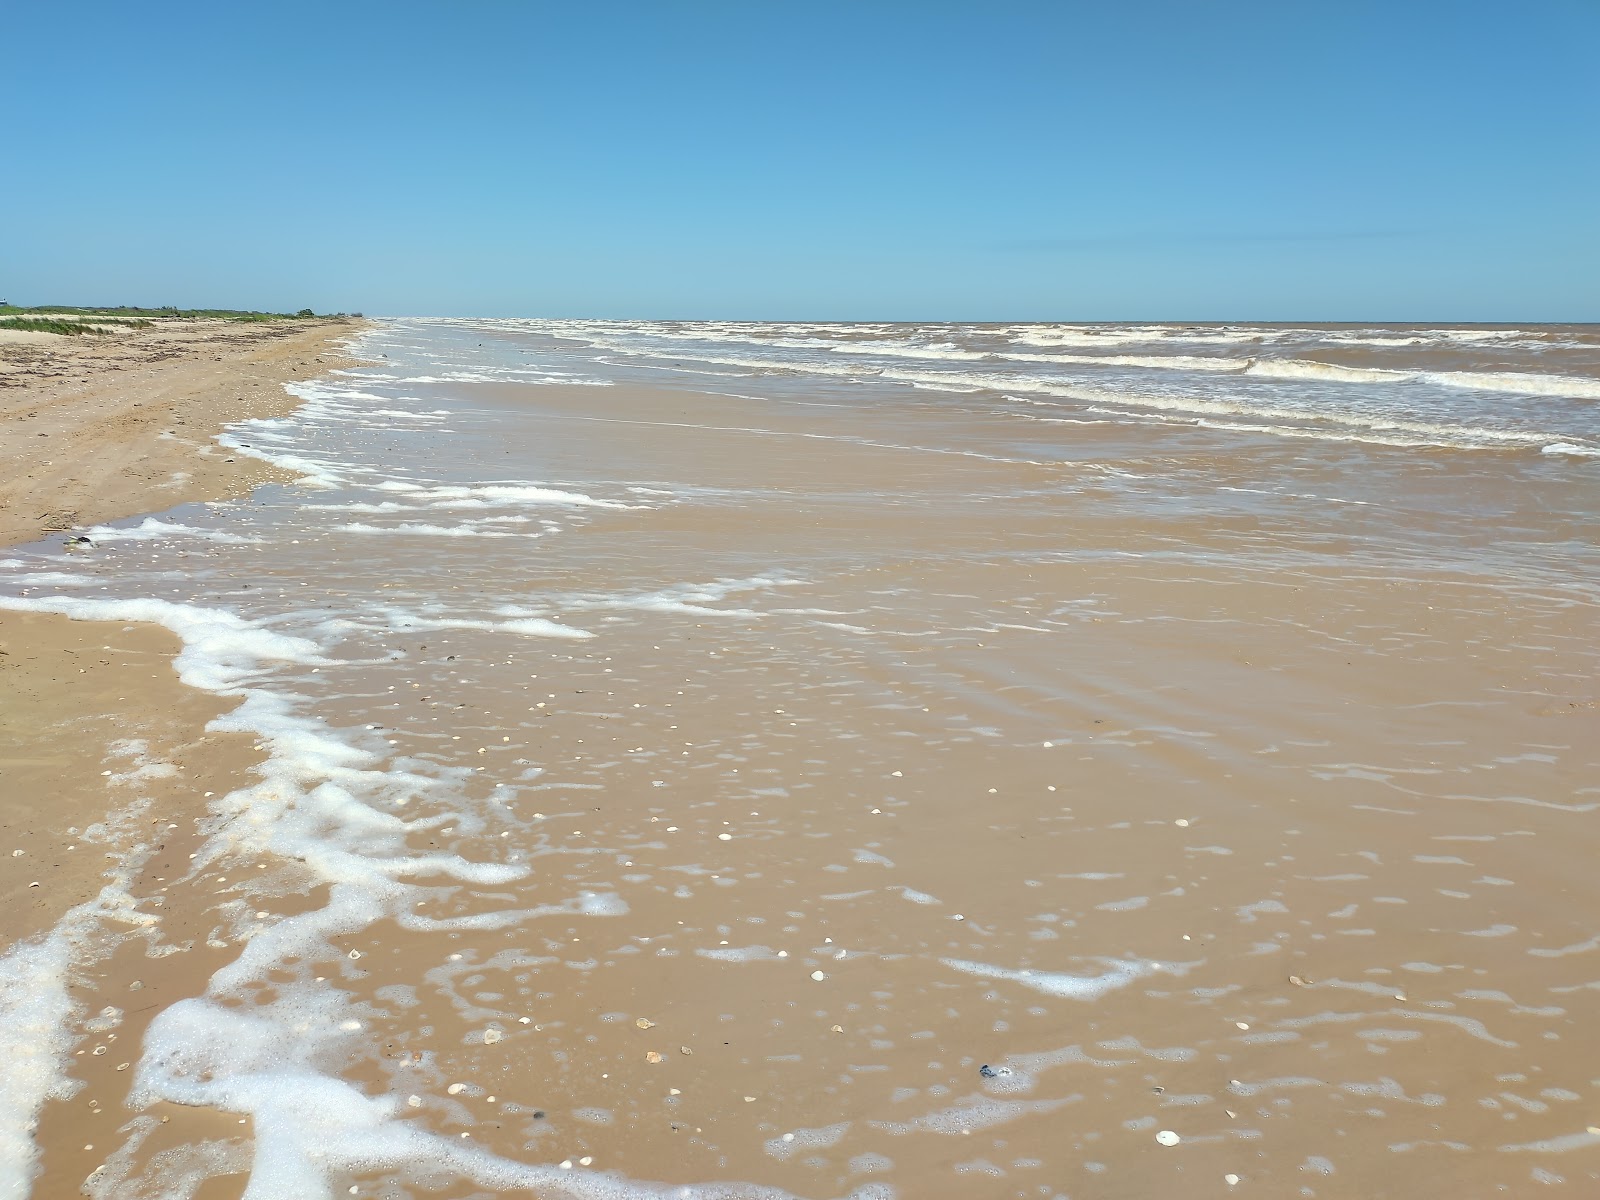 Sargent beach'in fotoğrafı gri kum yüzey ile